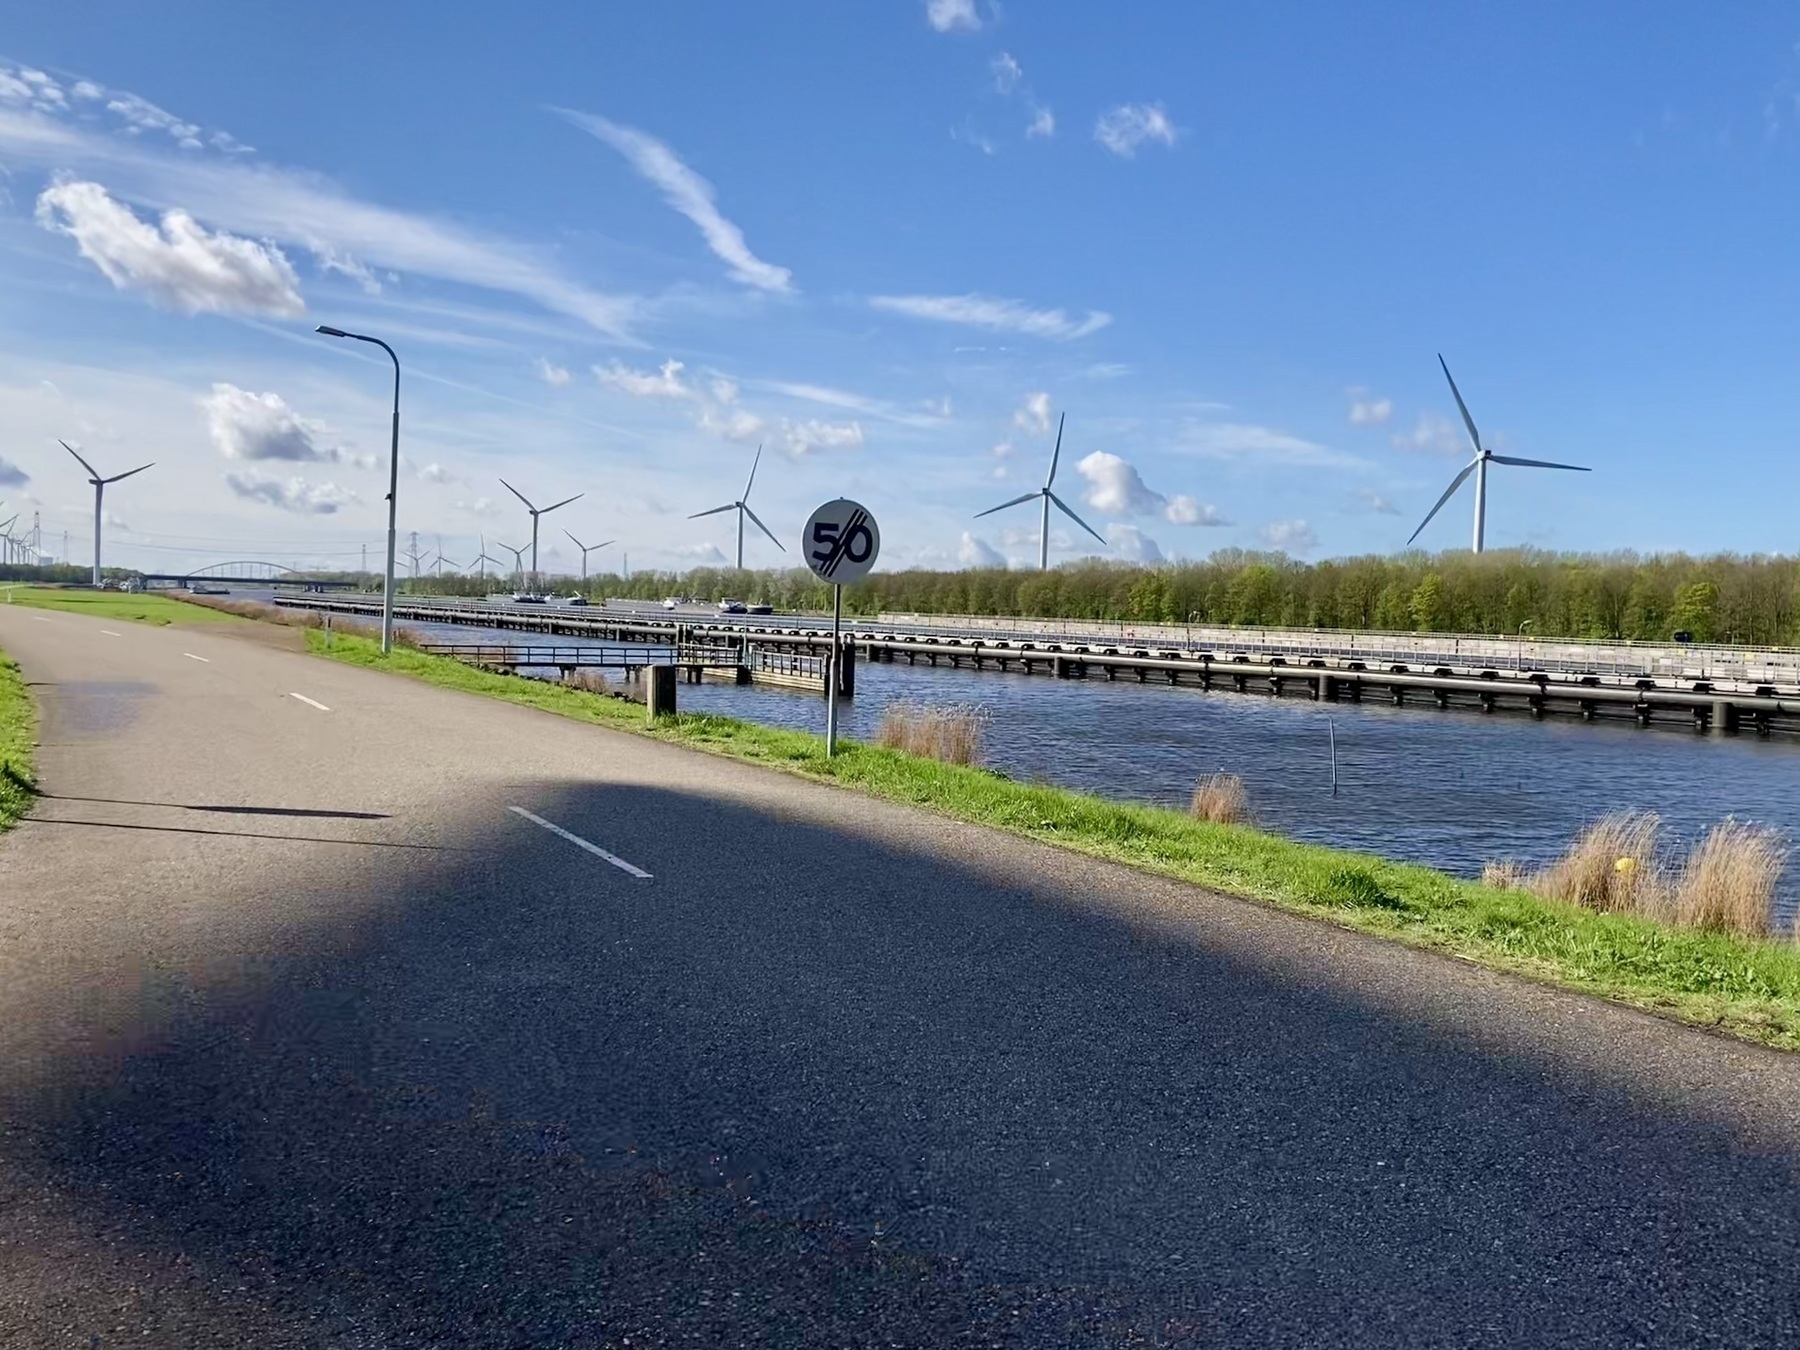 Auto-generated description: Een verharde weg loopt langs een kanaal, met een snelheidslimietbord van 50 km/u en windturbines op de achtergrond onder een gedeeltelijk bewolkte hemel.